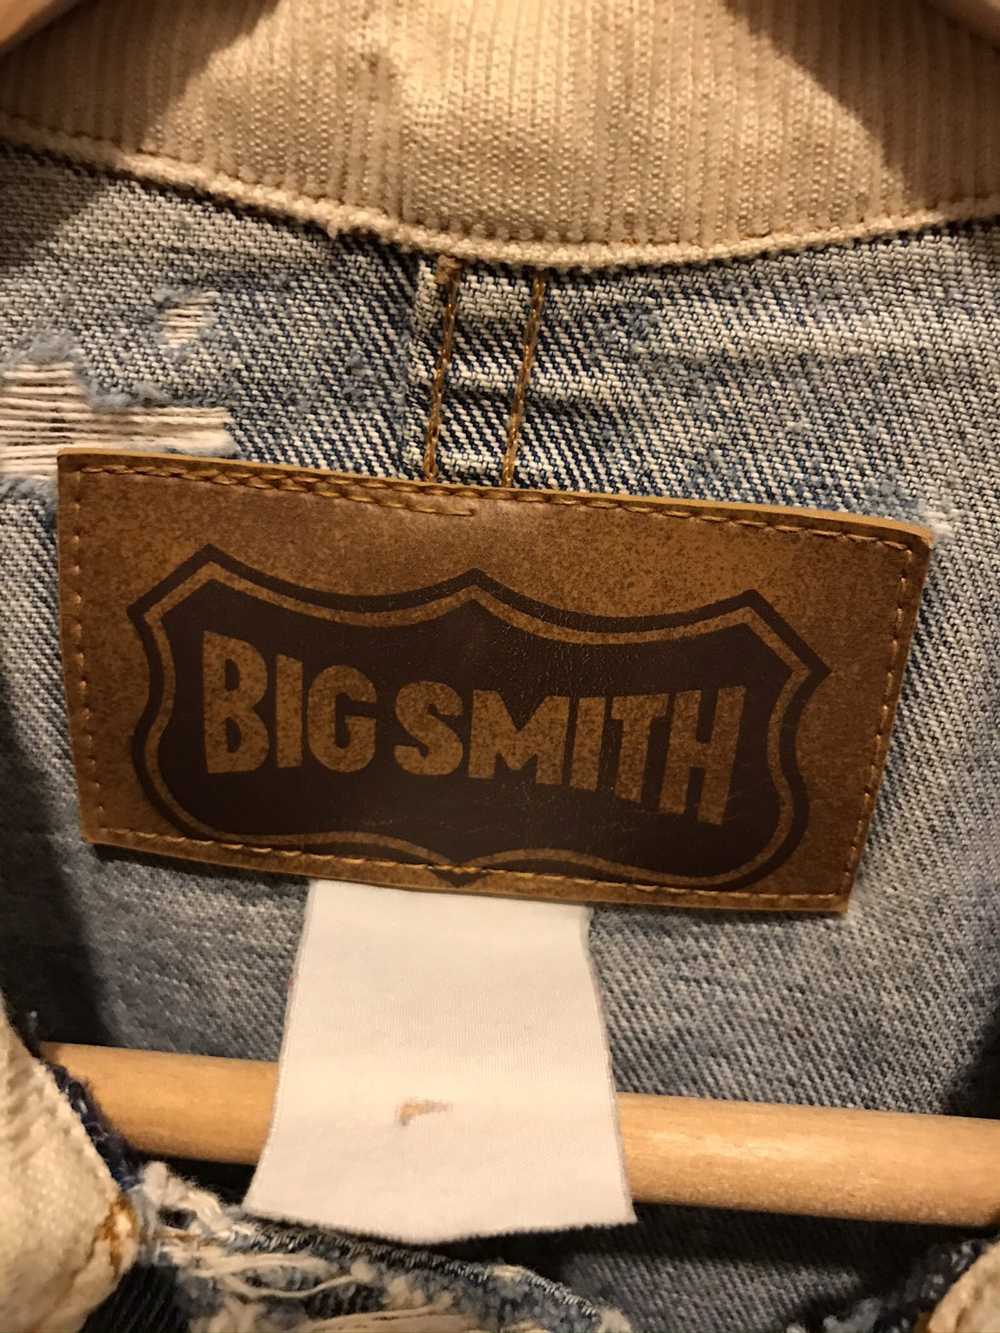 Vintage Vintage 90s Big Smith Denim Jacket - image 3